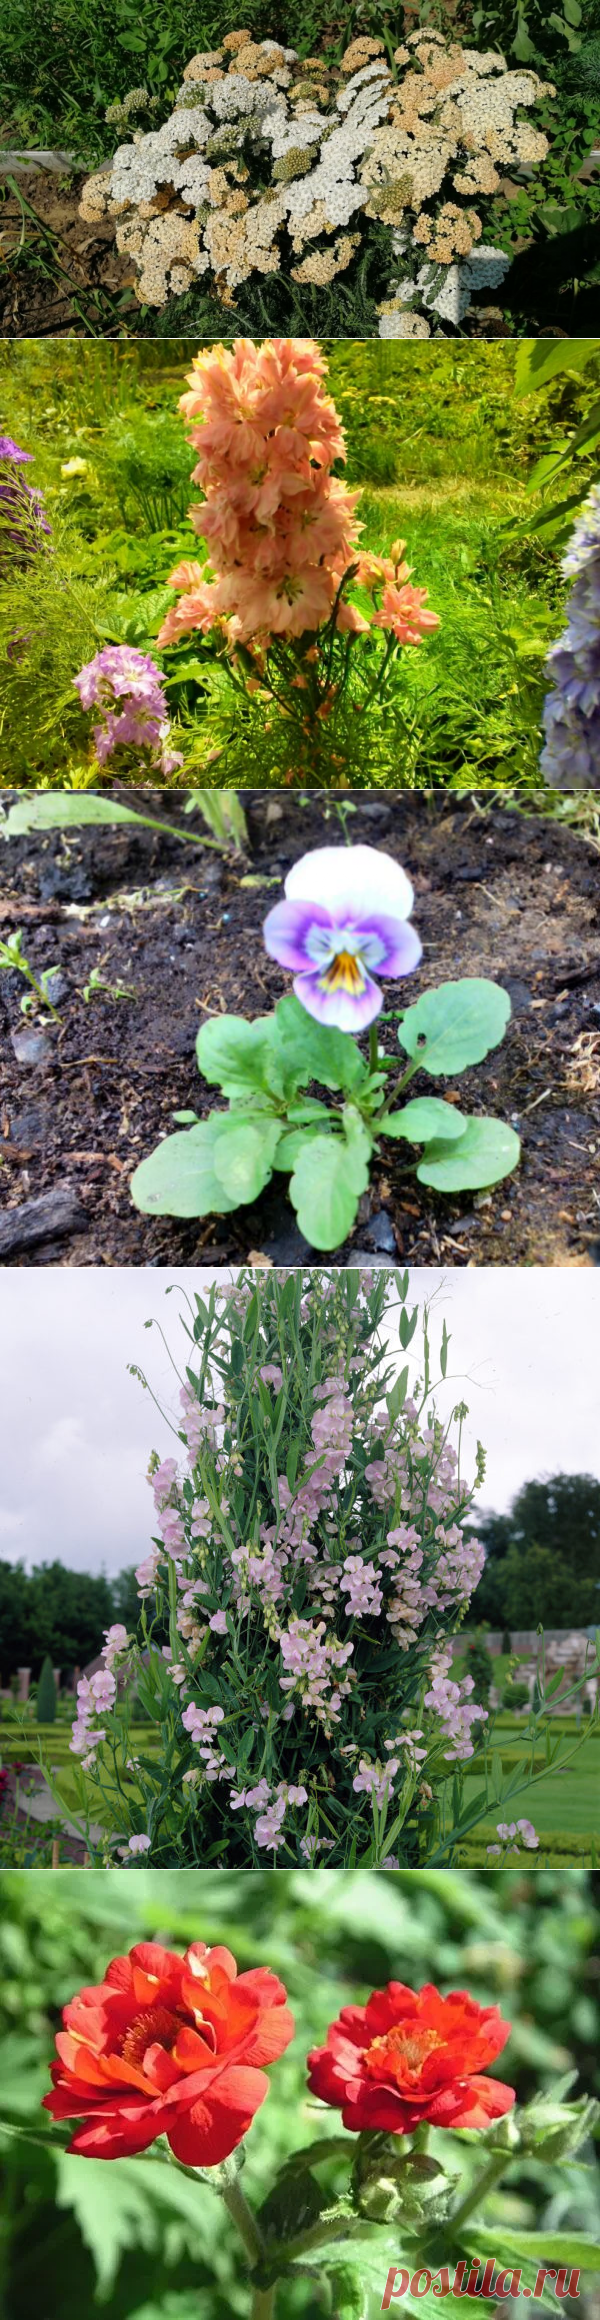 Многолетние цветы из семян: какие уже вырастила и еще запланировала | уДачный проект | Яндекс Дзен